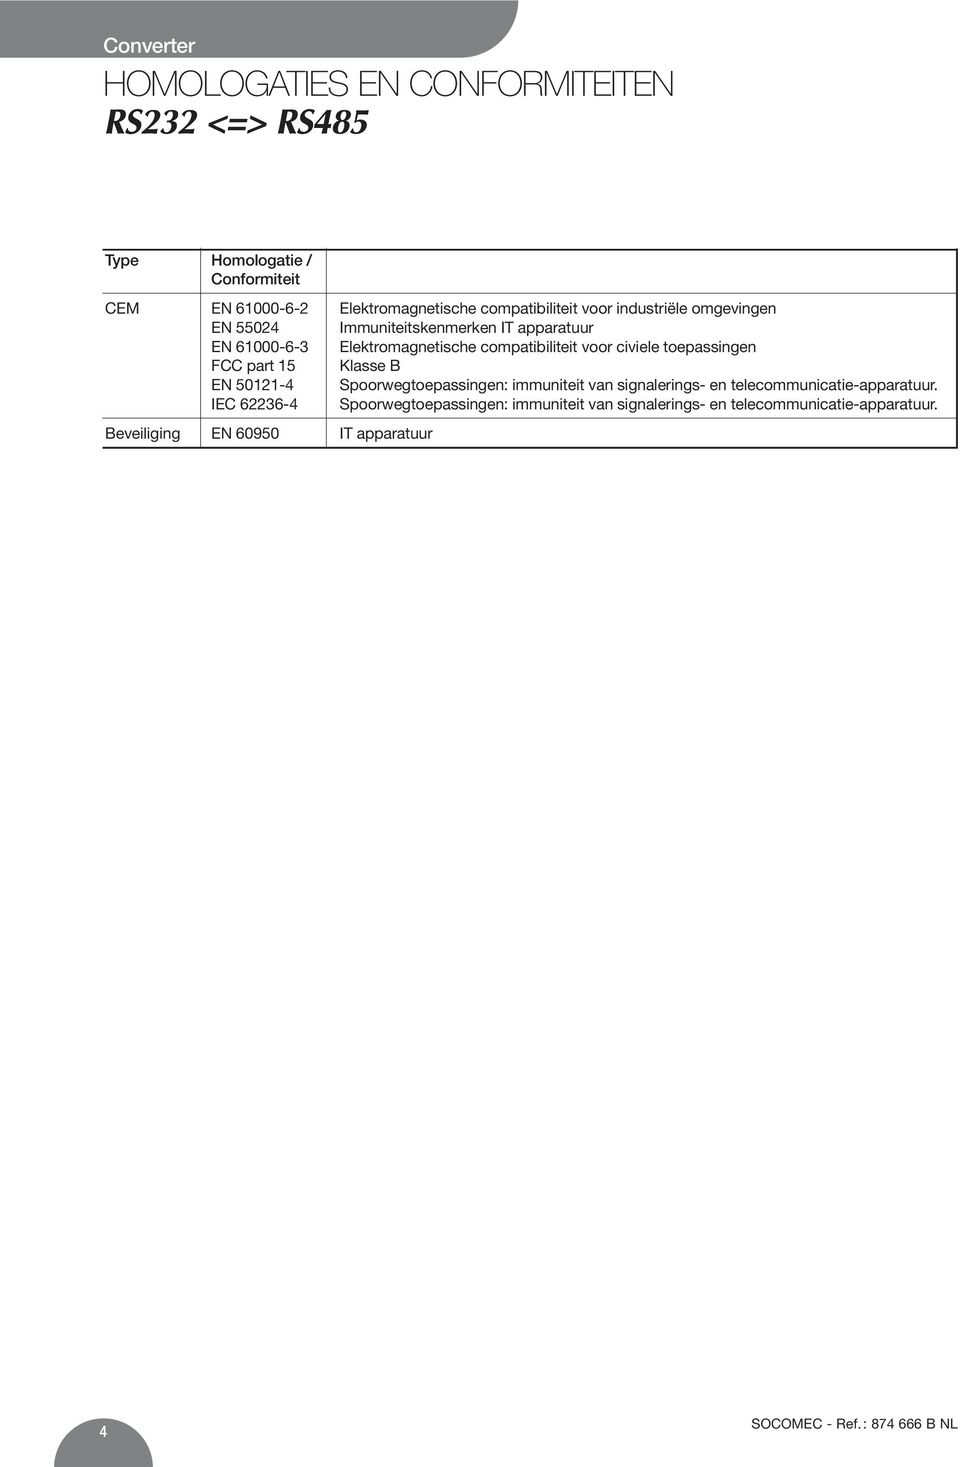 civiele toepassingen FCC part 15 Klasse B EN 50121-4 Spoorwegtoepassingen: immuniteit van signalerings- en